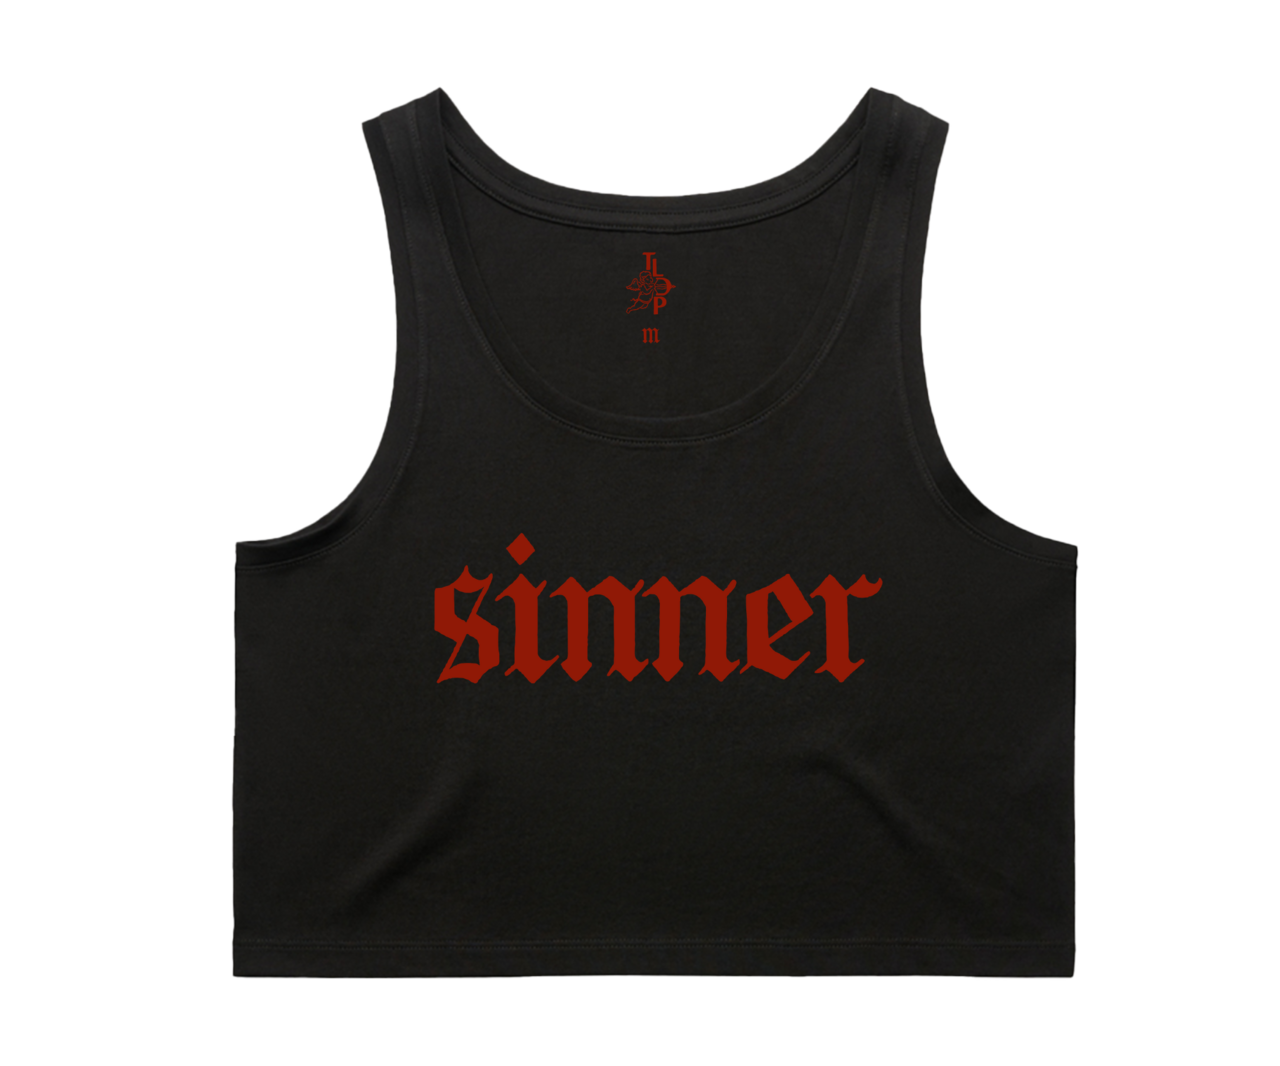 The Last Dinner Party - Sinner: Vest